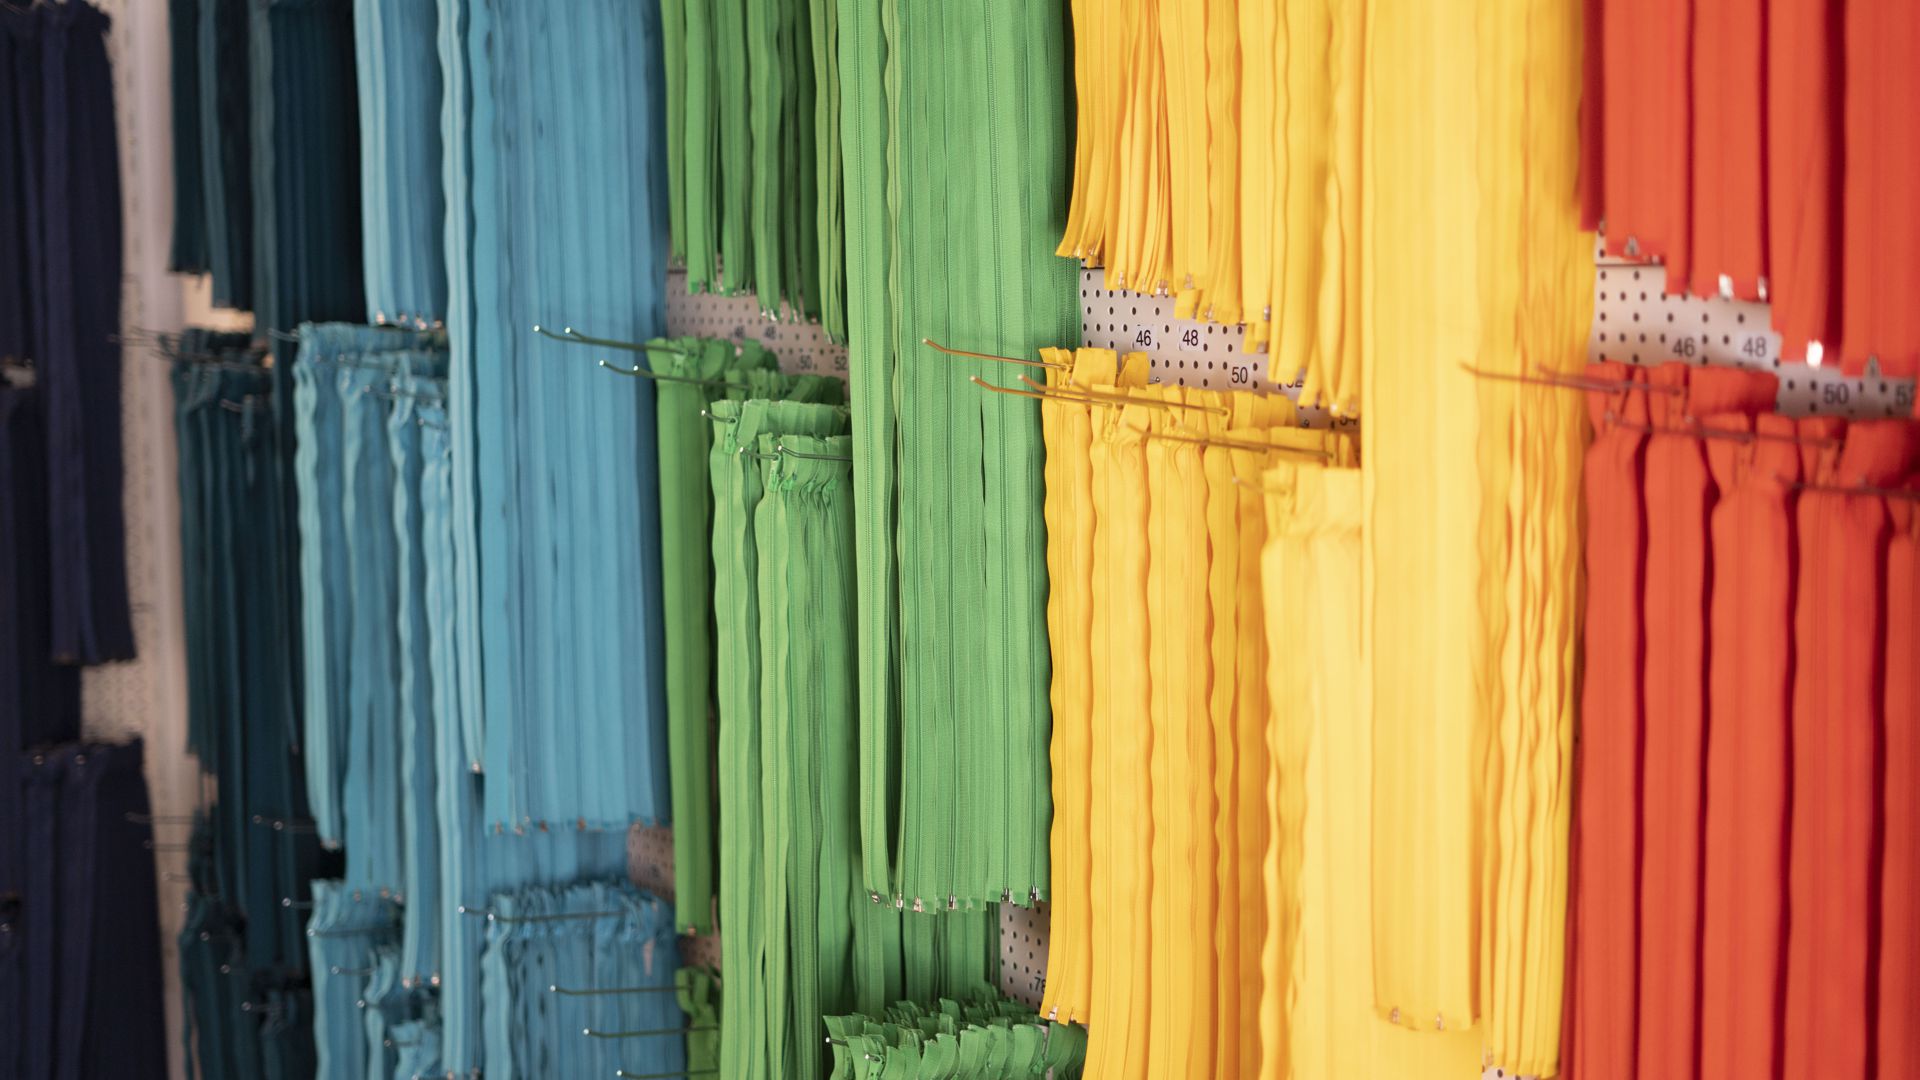 Reißverschlüsse in allen Regenbogenfarben hängen an der Wand der Schneiderei.